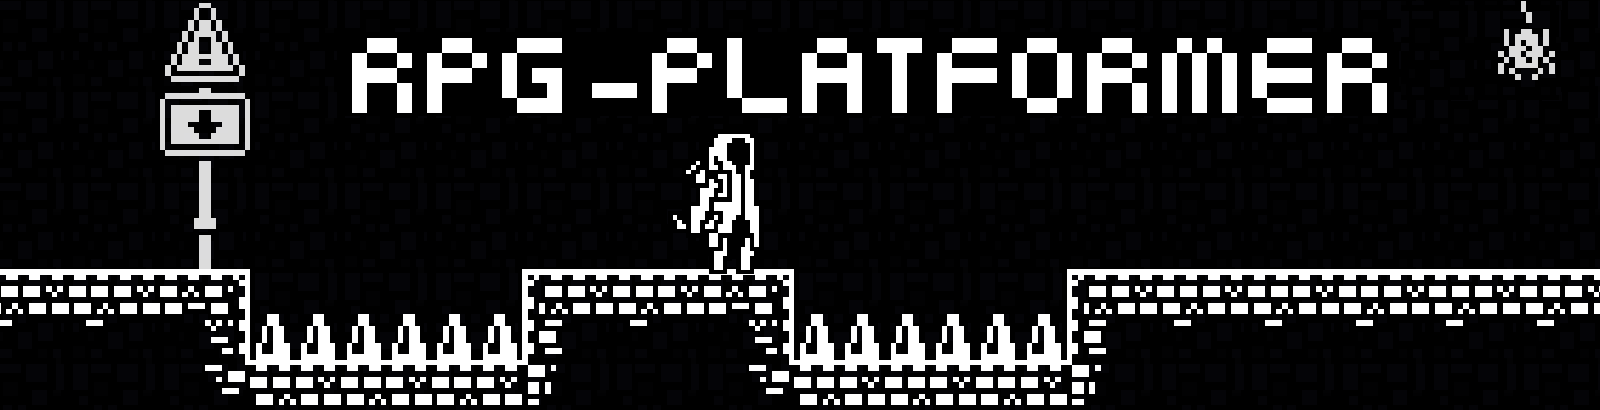 RPG-Platformer(Demo, kind of)